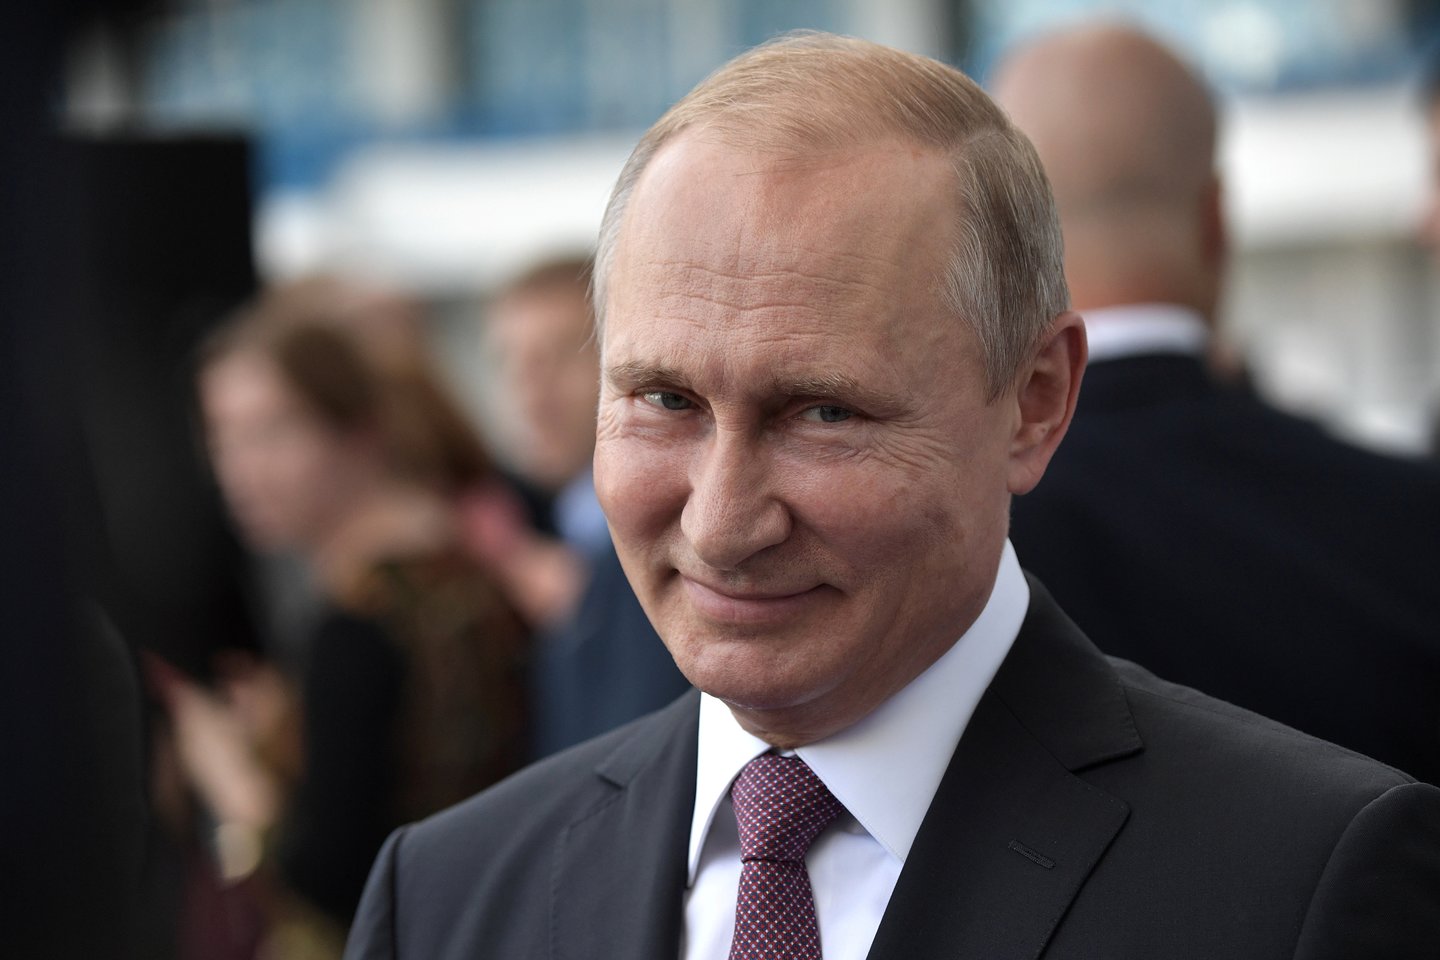 Praėjusį mėnesį įvyko JAV ir Rusijos viršūnių susitikimas. Jame Vladimiras Putinas Donaldui Trumpui pateikė ilgą sąrašą prašymų ir pasiūlymų ginklų kontrolės tema. <br>Reuters/Scanpix nuotr.